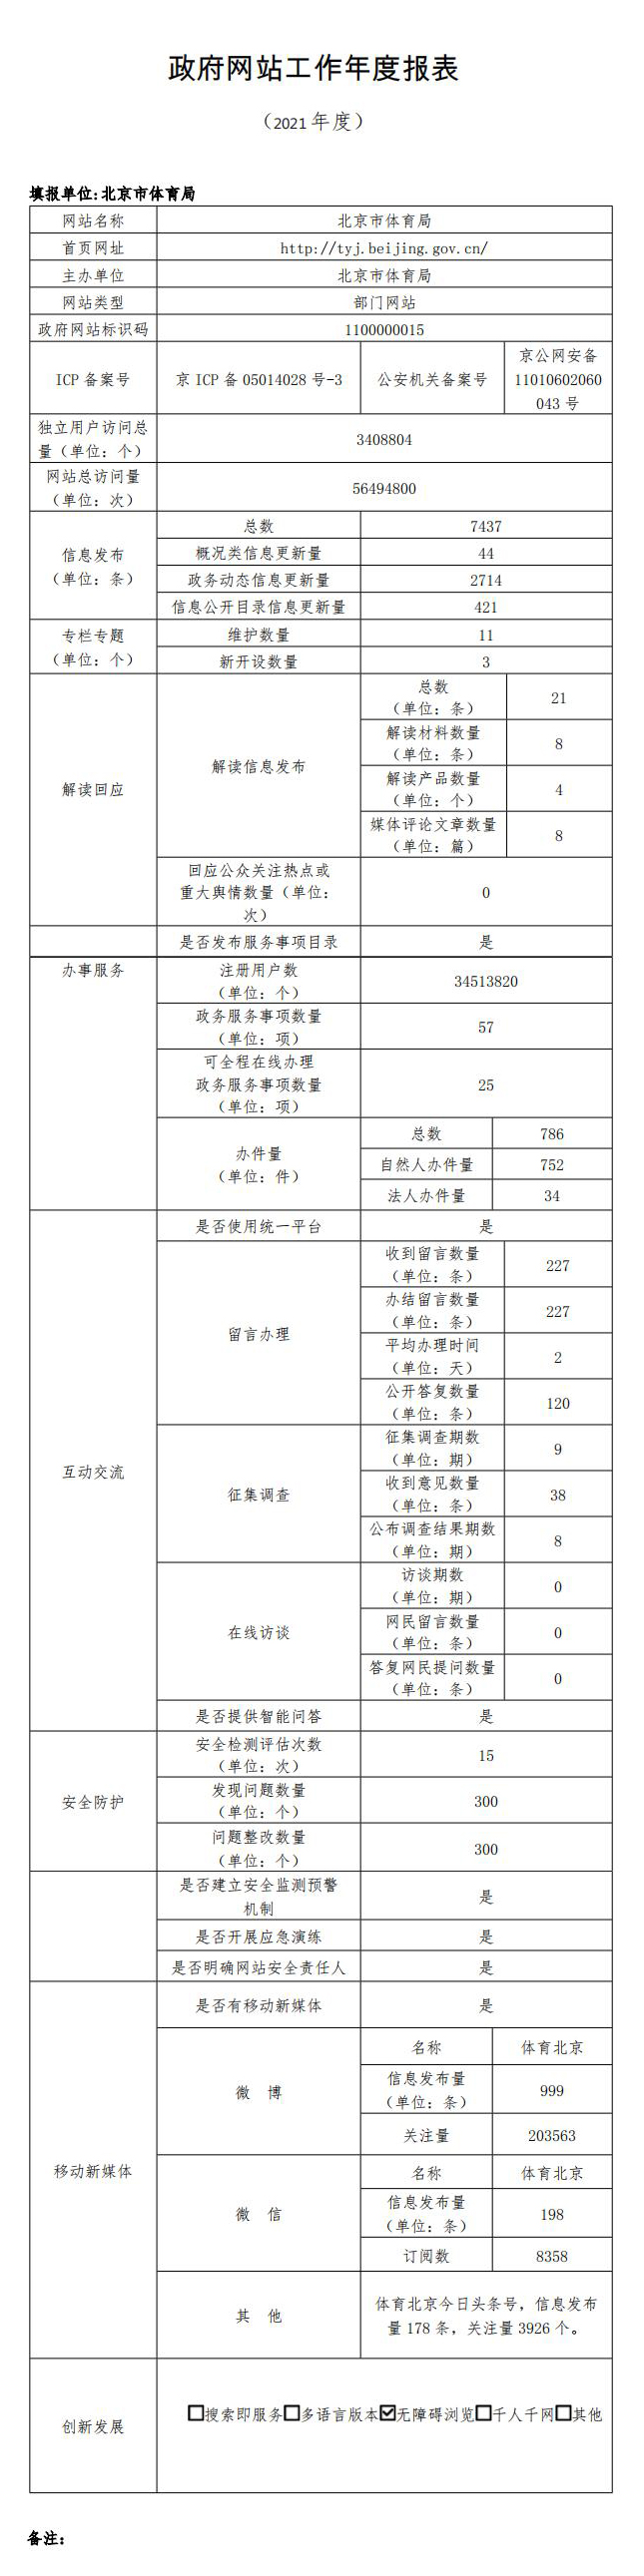 北京市體育局2021年政府網站年度工作報表